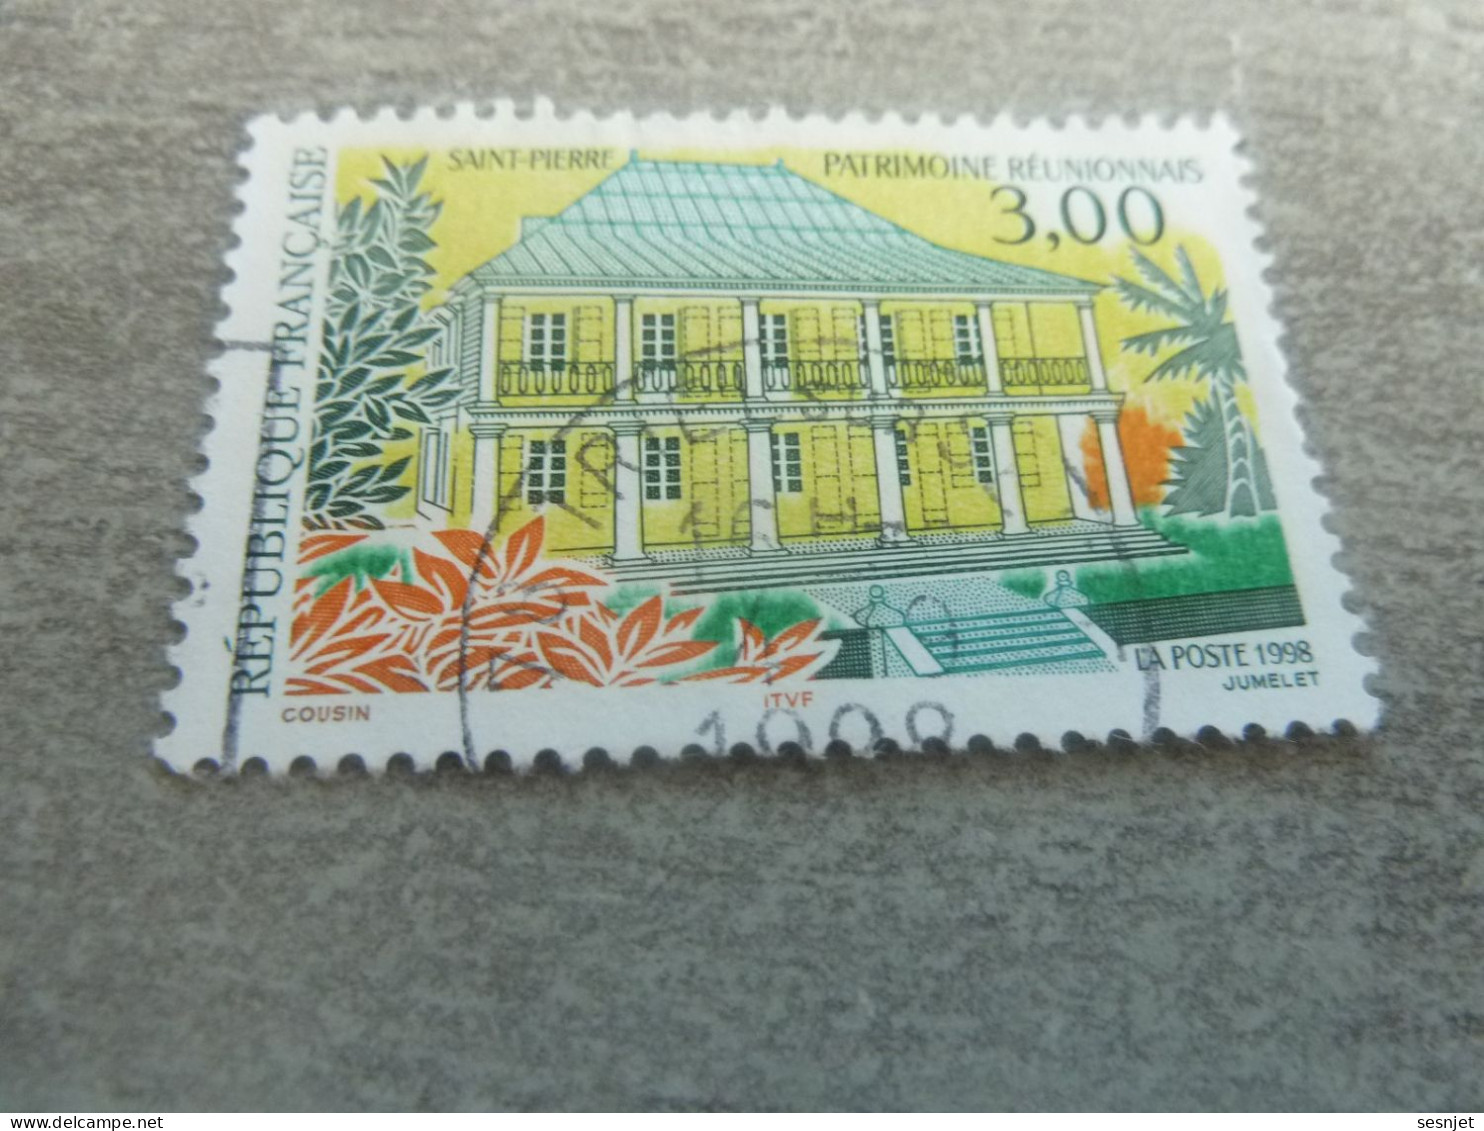 Saint-Pierre - Patrimoine Réunionnais - 3f. - Yt 3144 - Multicolore - Oblitéré - Année 1998 - - Used Stamps